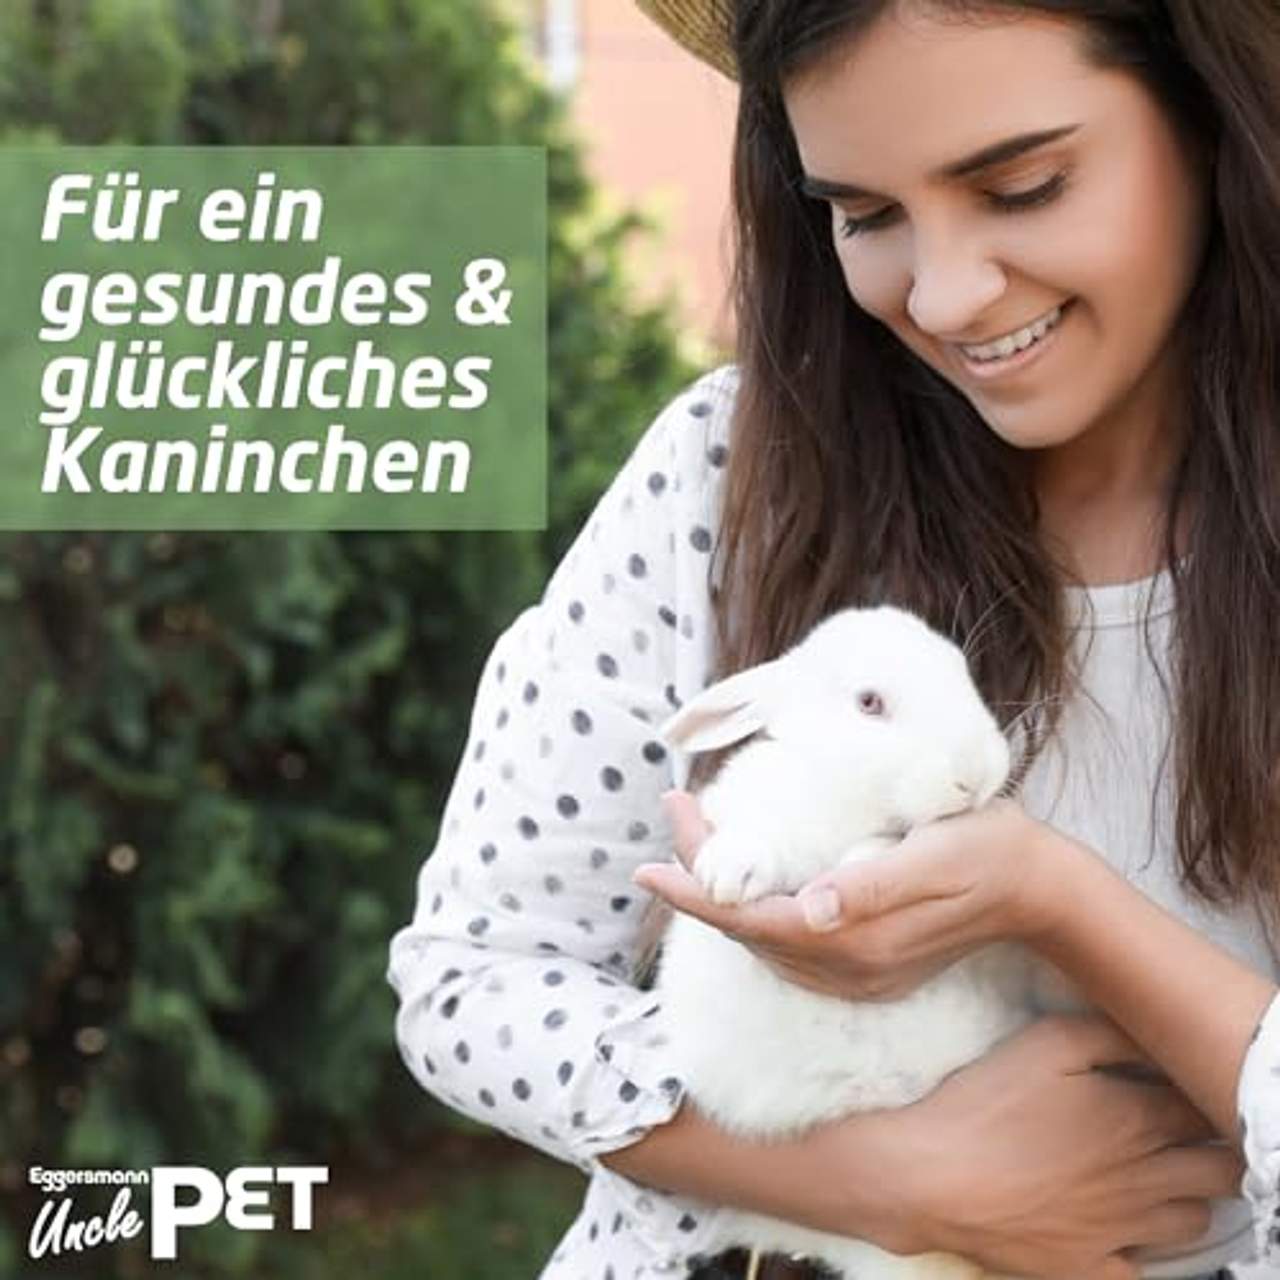 Eggersmann Uncle Pet Premium Kaninchen Müsli 25 kg